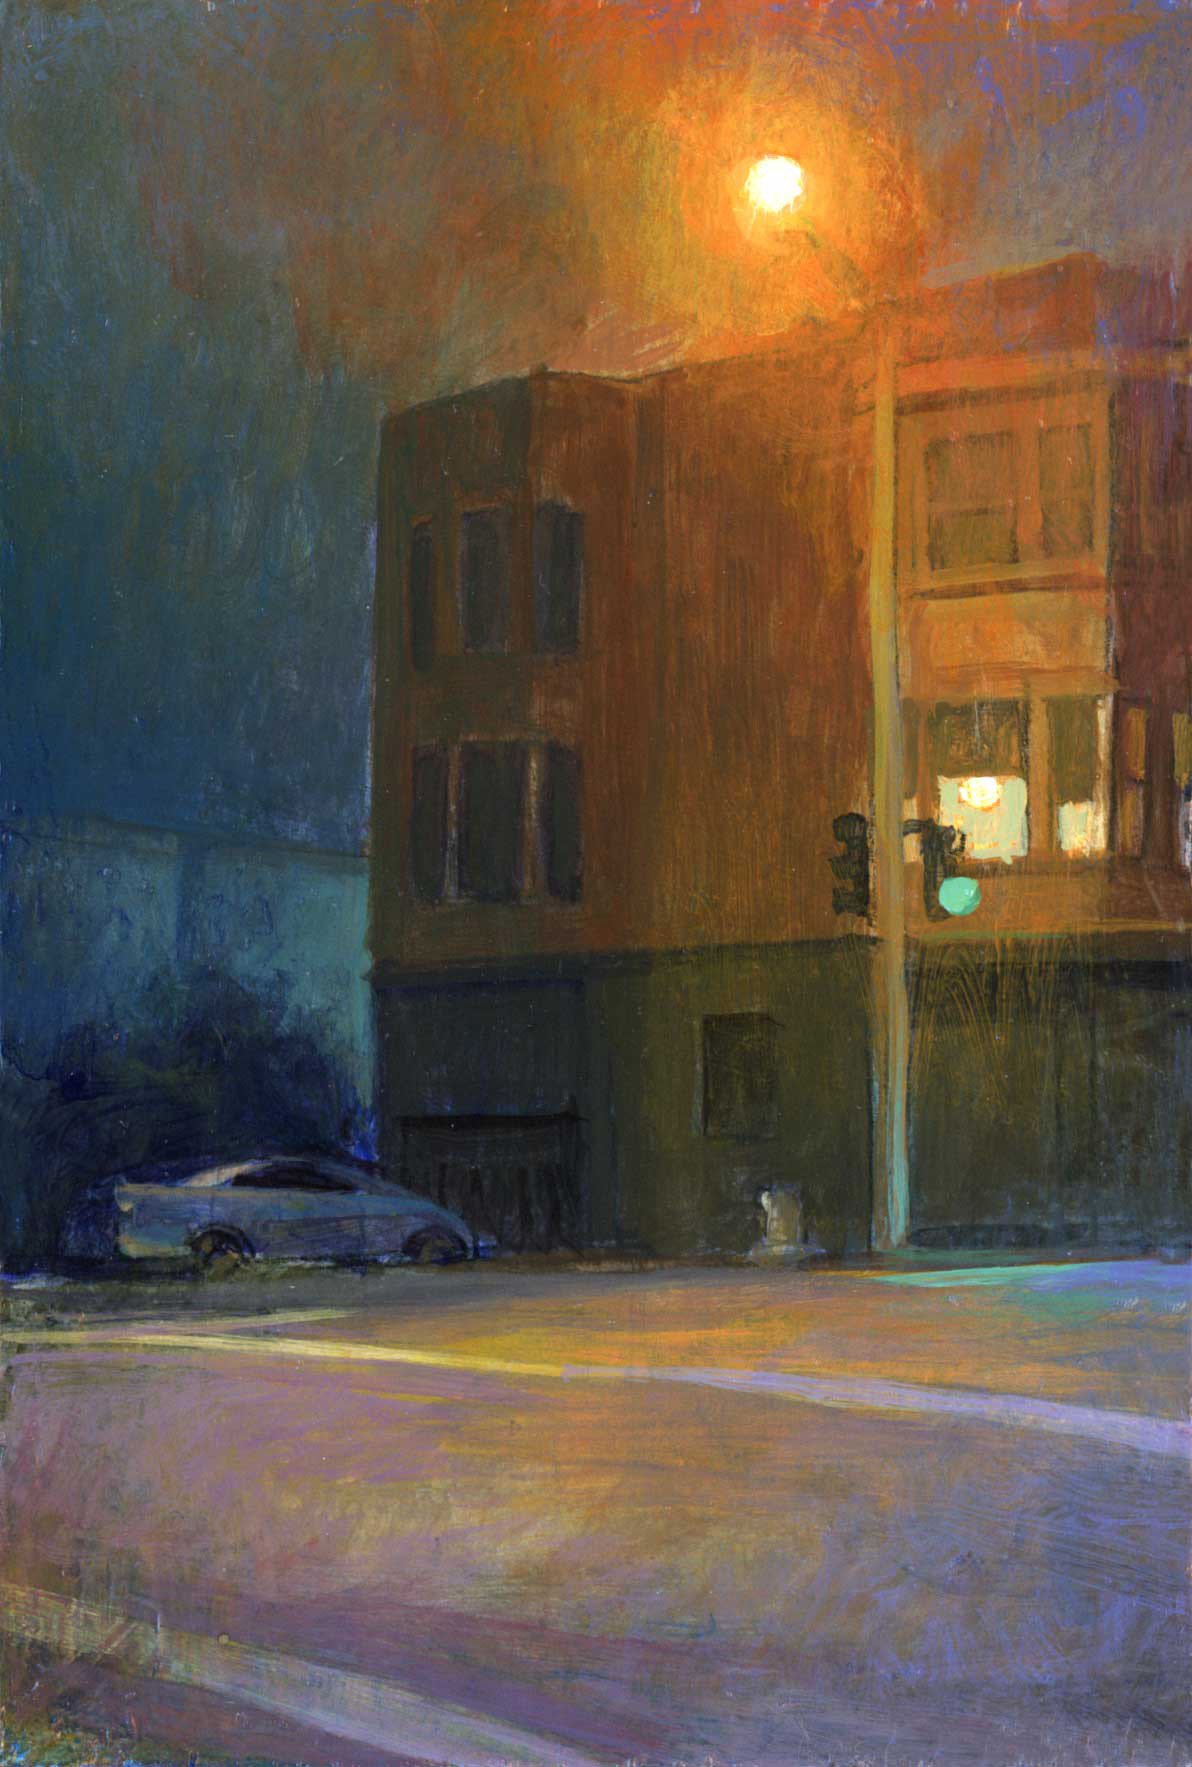 Foggy San Francisco Night by Wayne Jiang